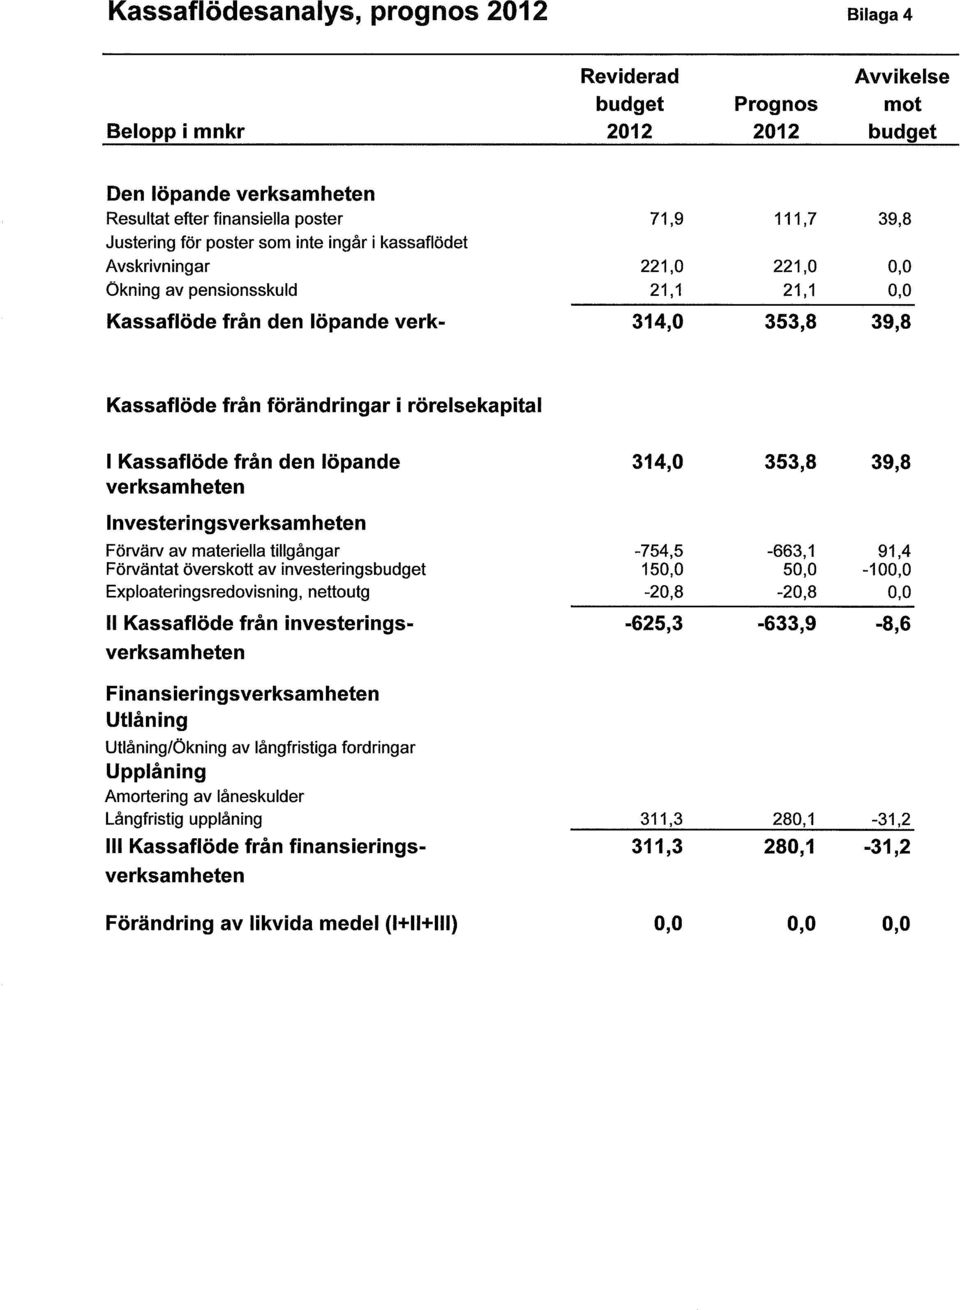 rörelsekapital I Kassaflöde från den löpande 314,0 353,8 39,8 verksamheten Investeringsverksamheten Förvärv av materiella tillgångar -754,5-663,1 91,4 Förväntat överskott av investeringsbudget 150,0